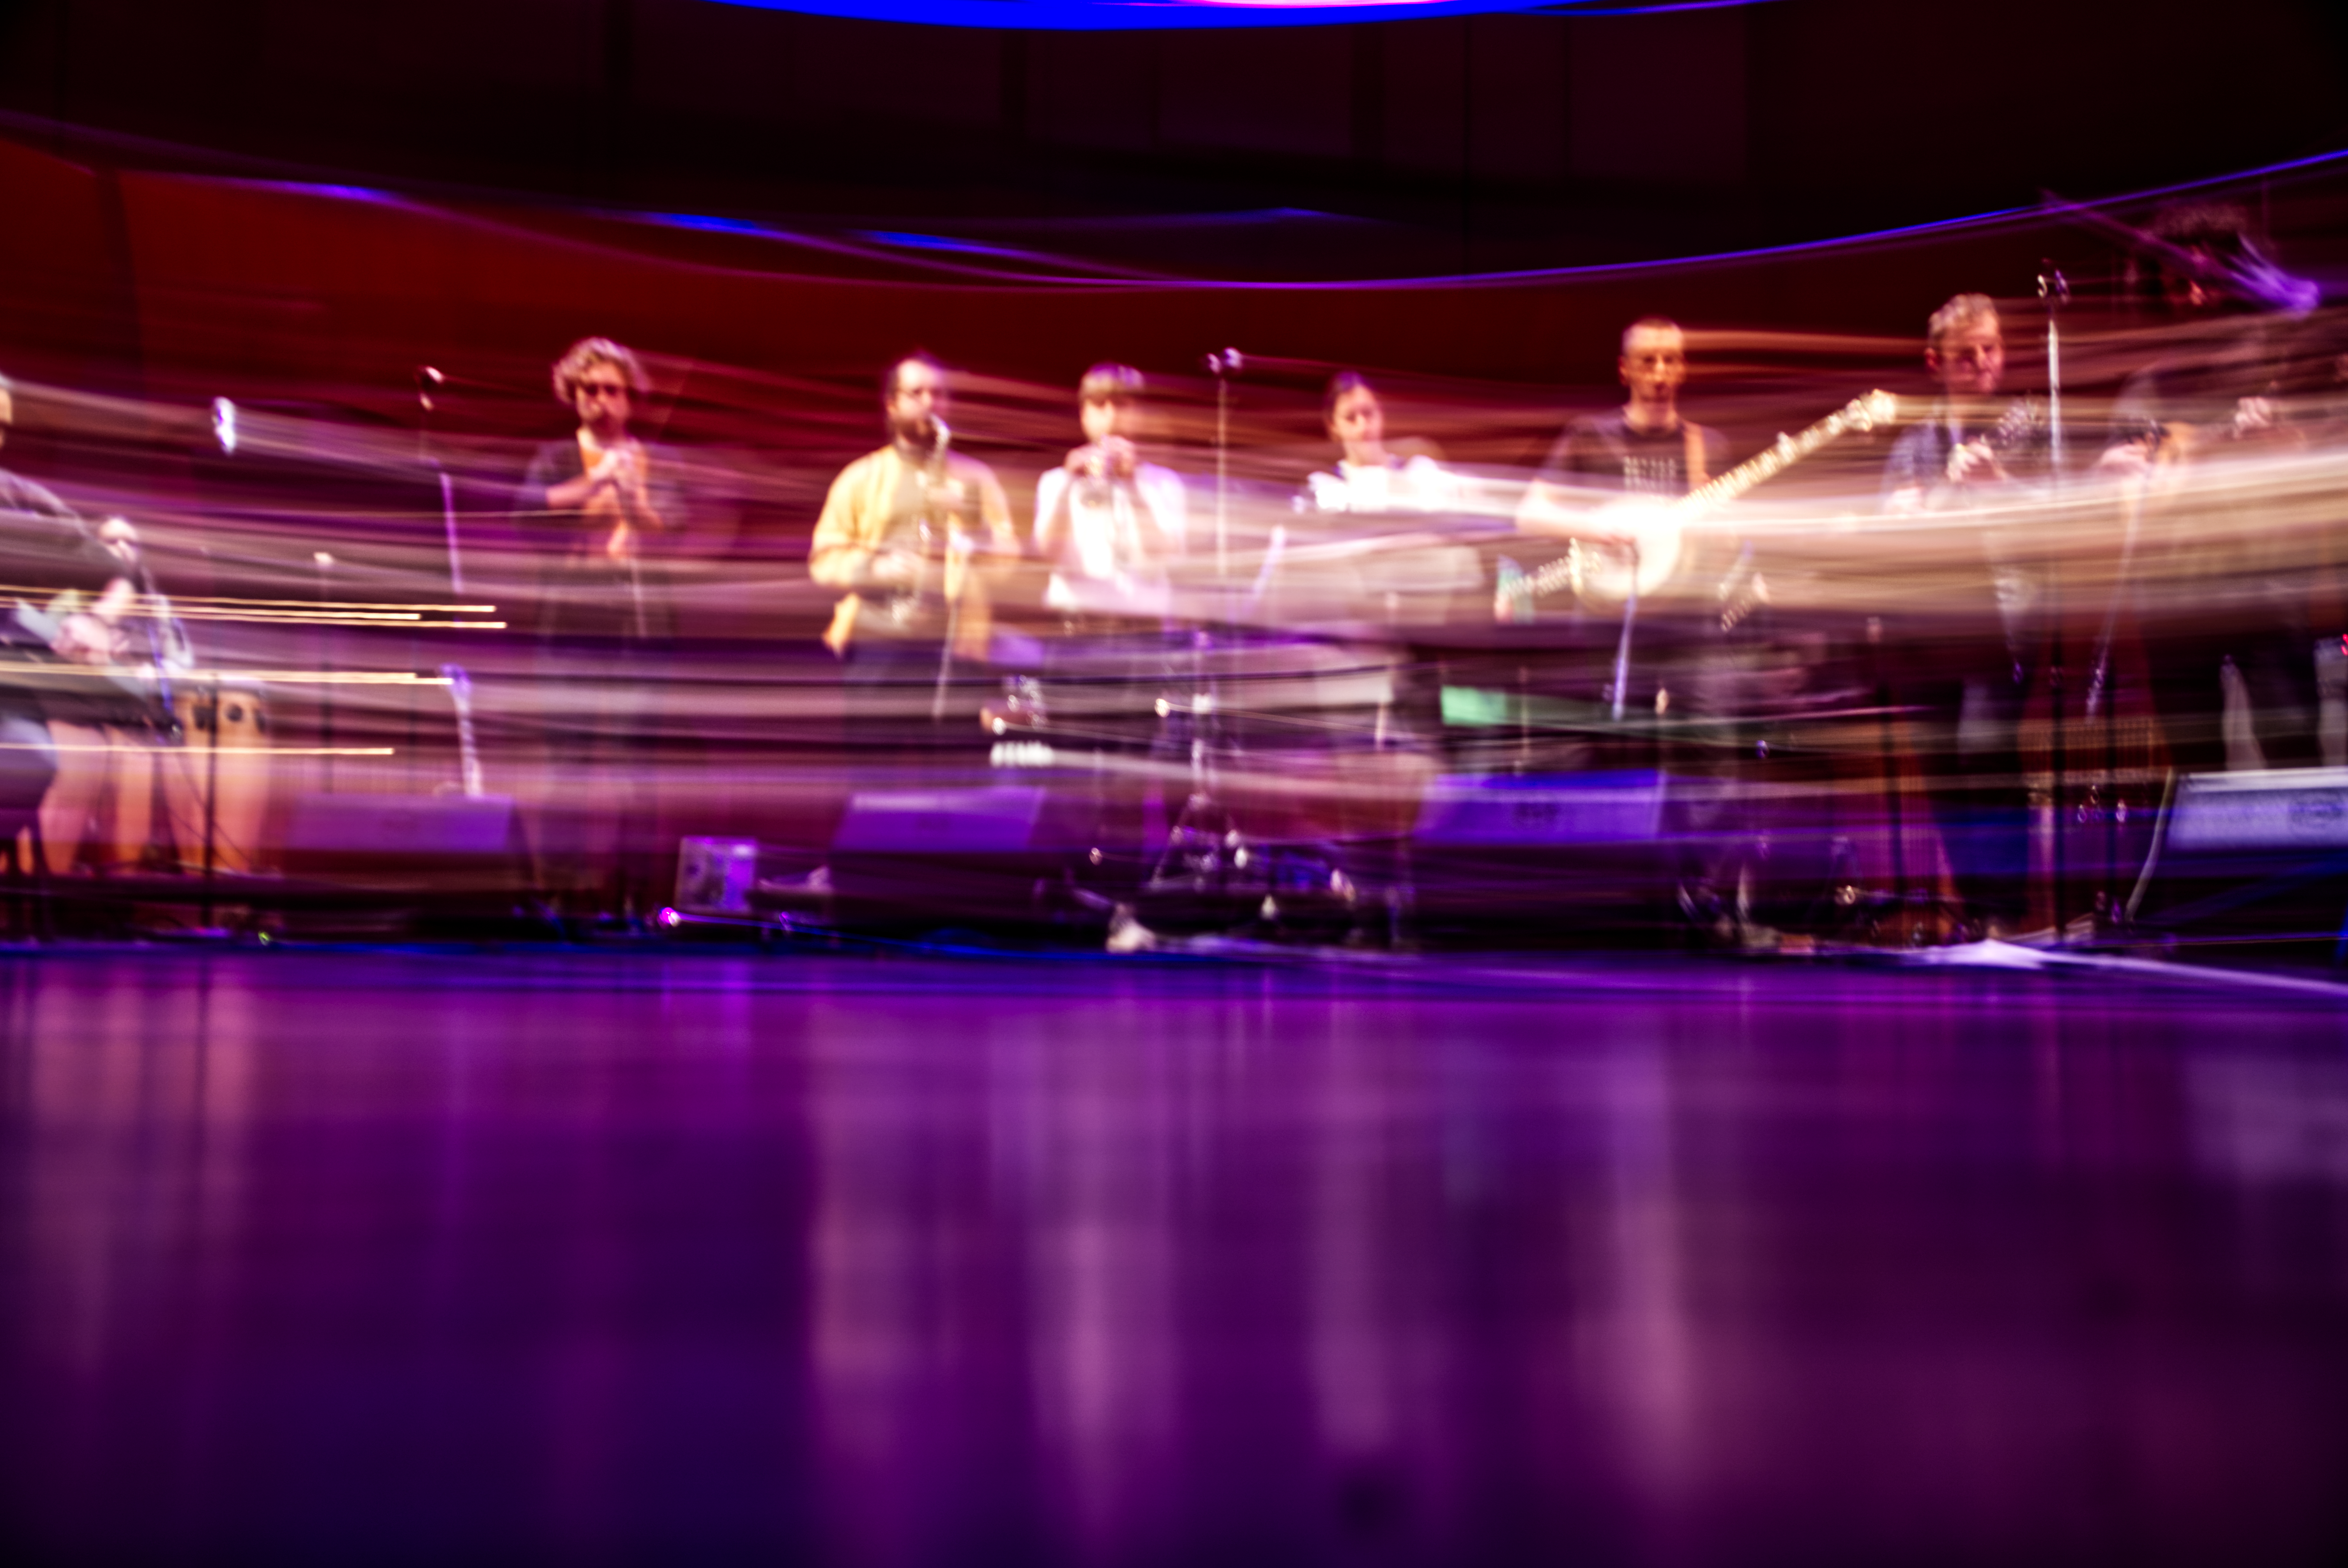 blurry musicians